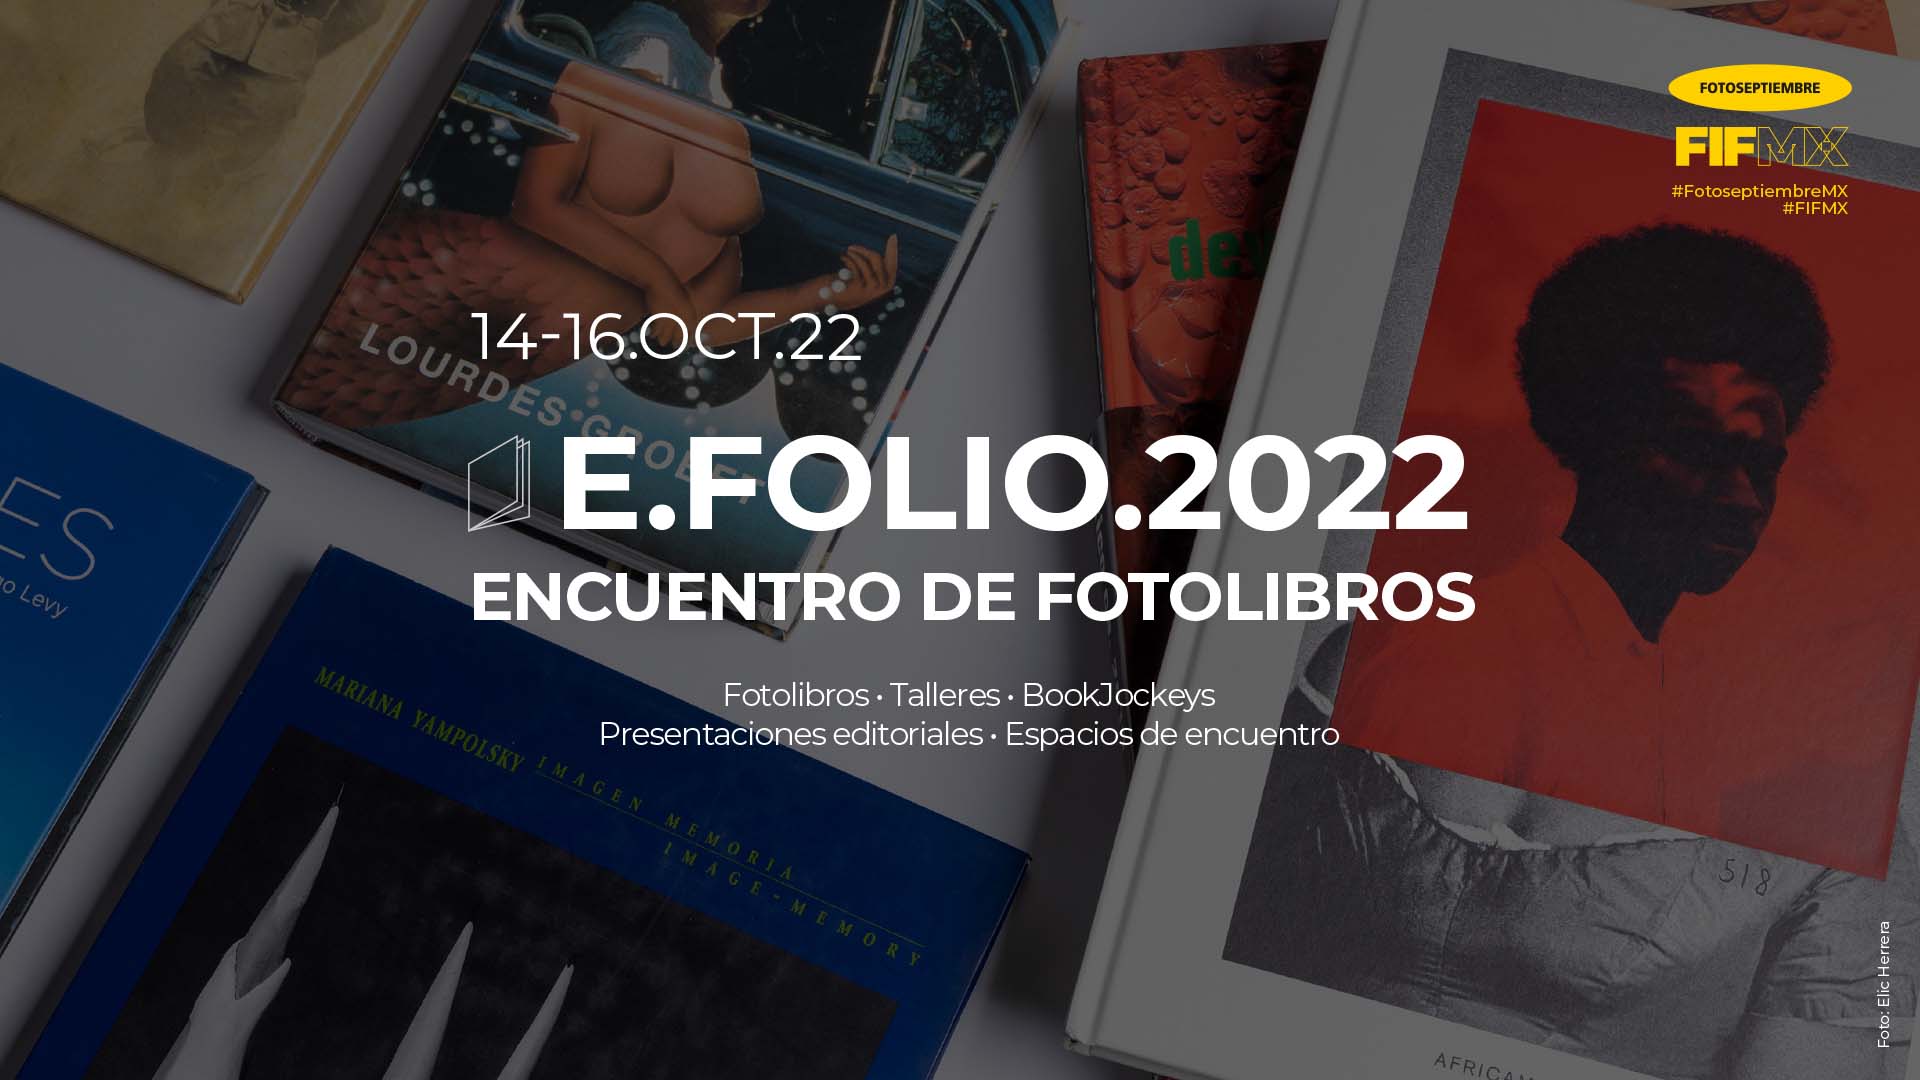 E.Folio.2022